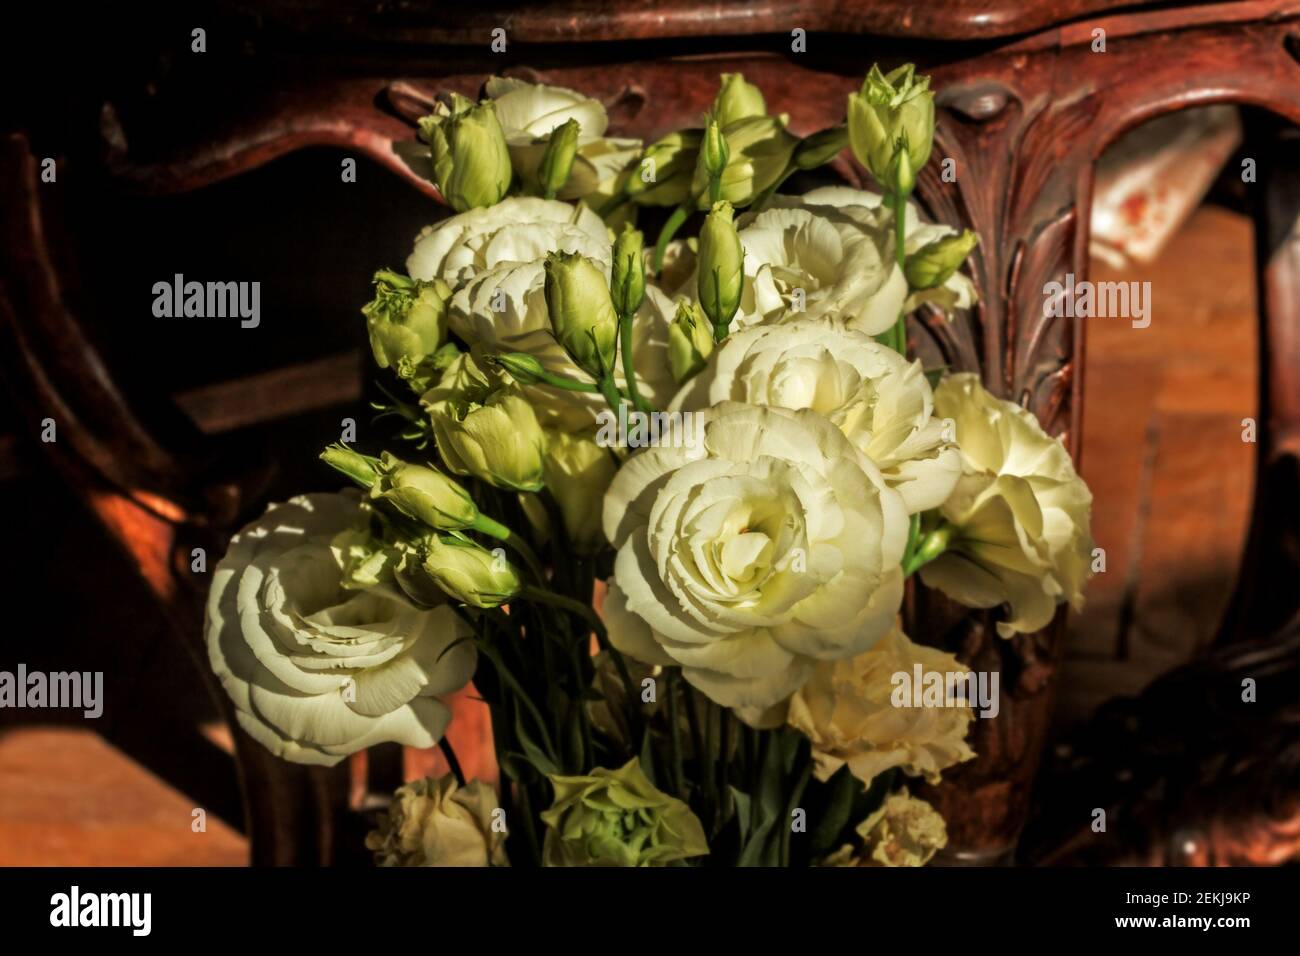 Véritable joli bouquet de luxe d'eustoma blanc sur fond de mobilier ancien Banque D'Images